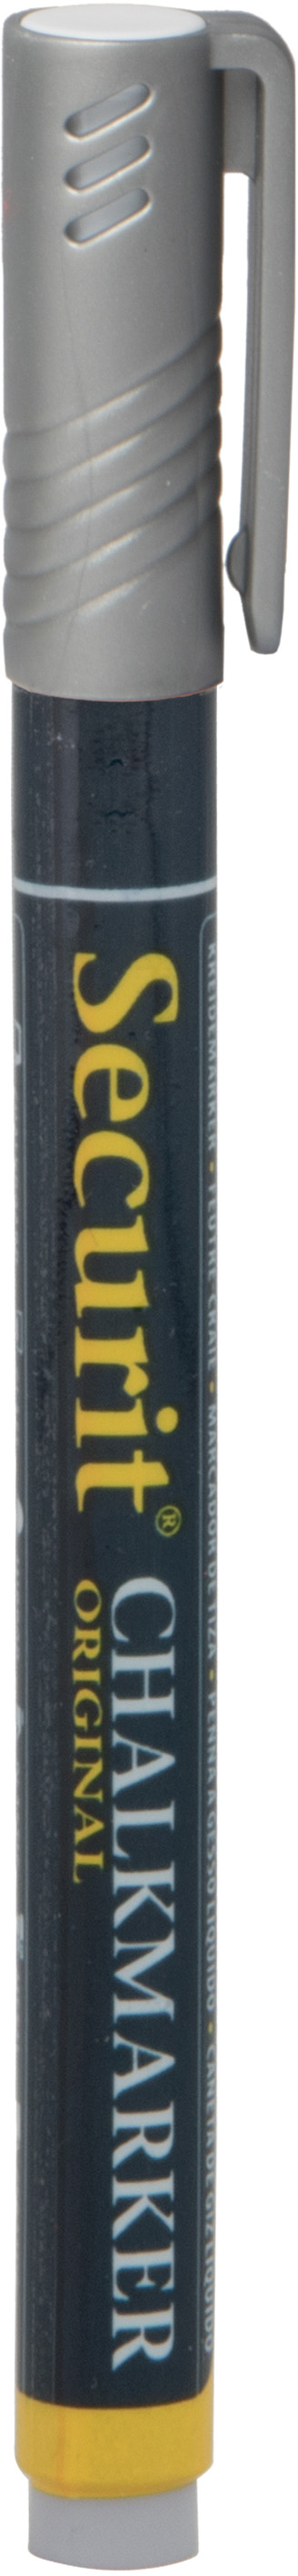 SECURIT Marker Craie 1-2mm SMA100-SL silber